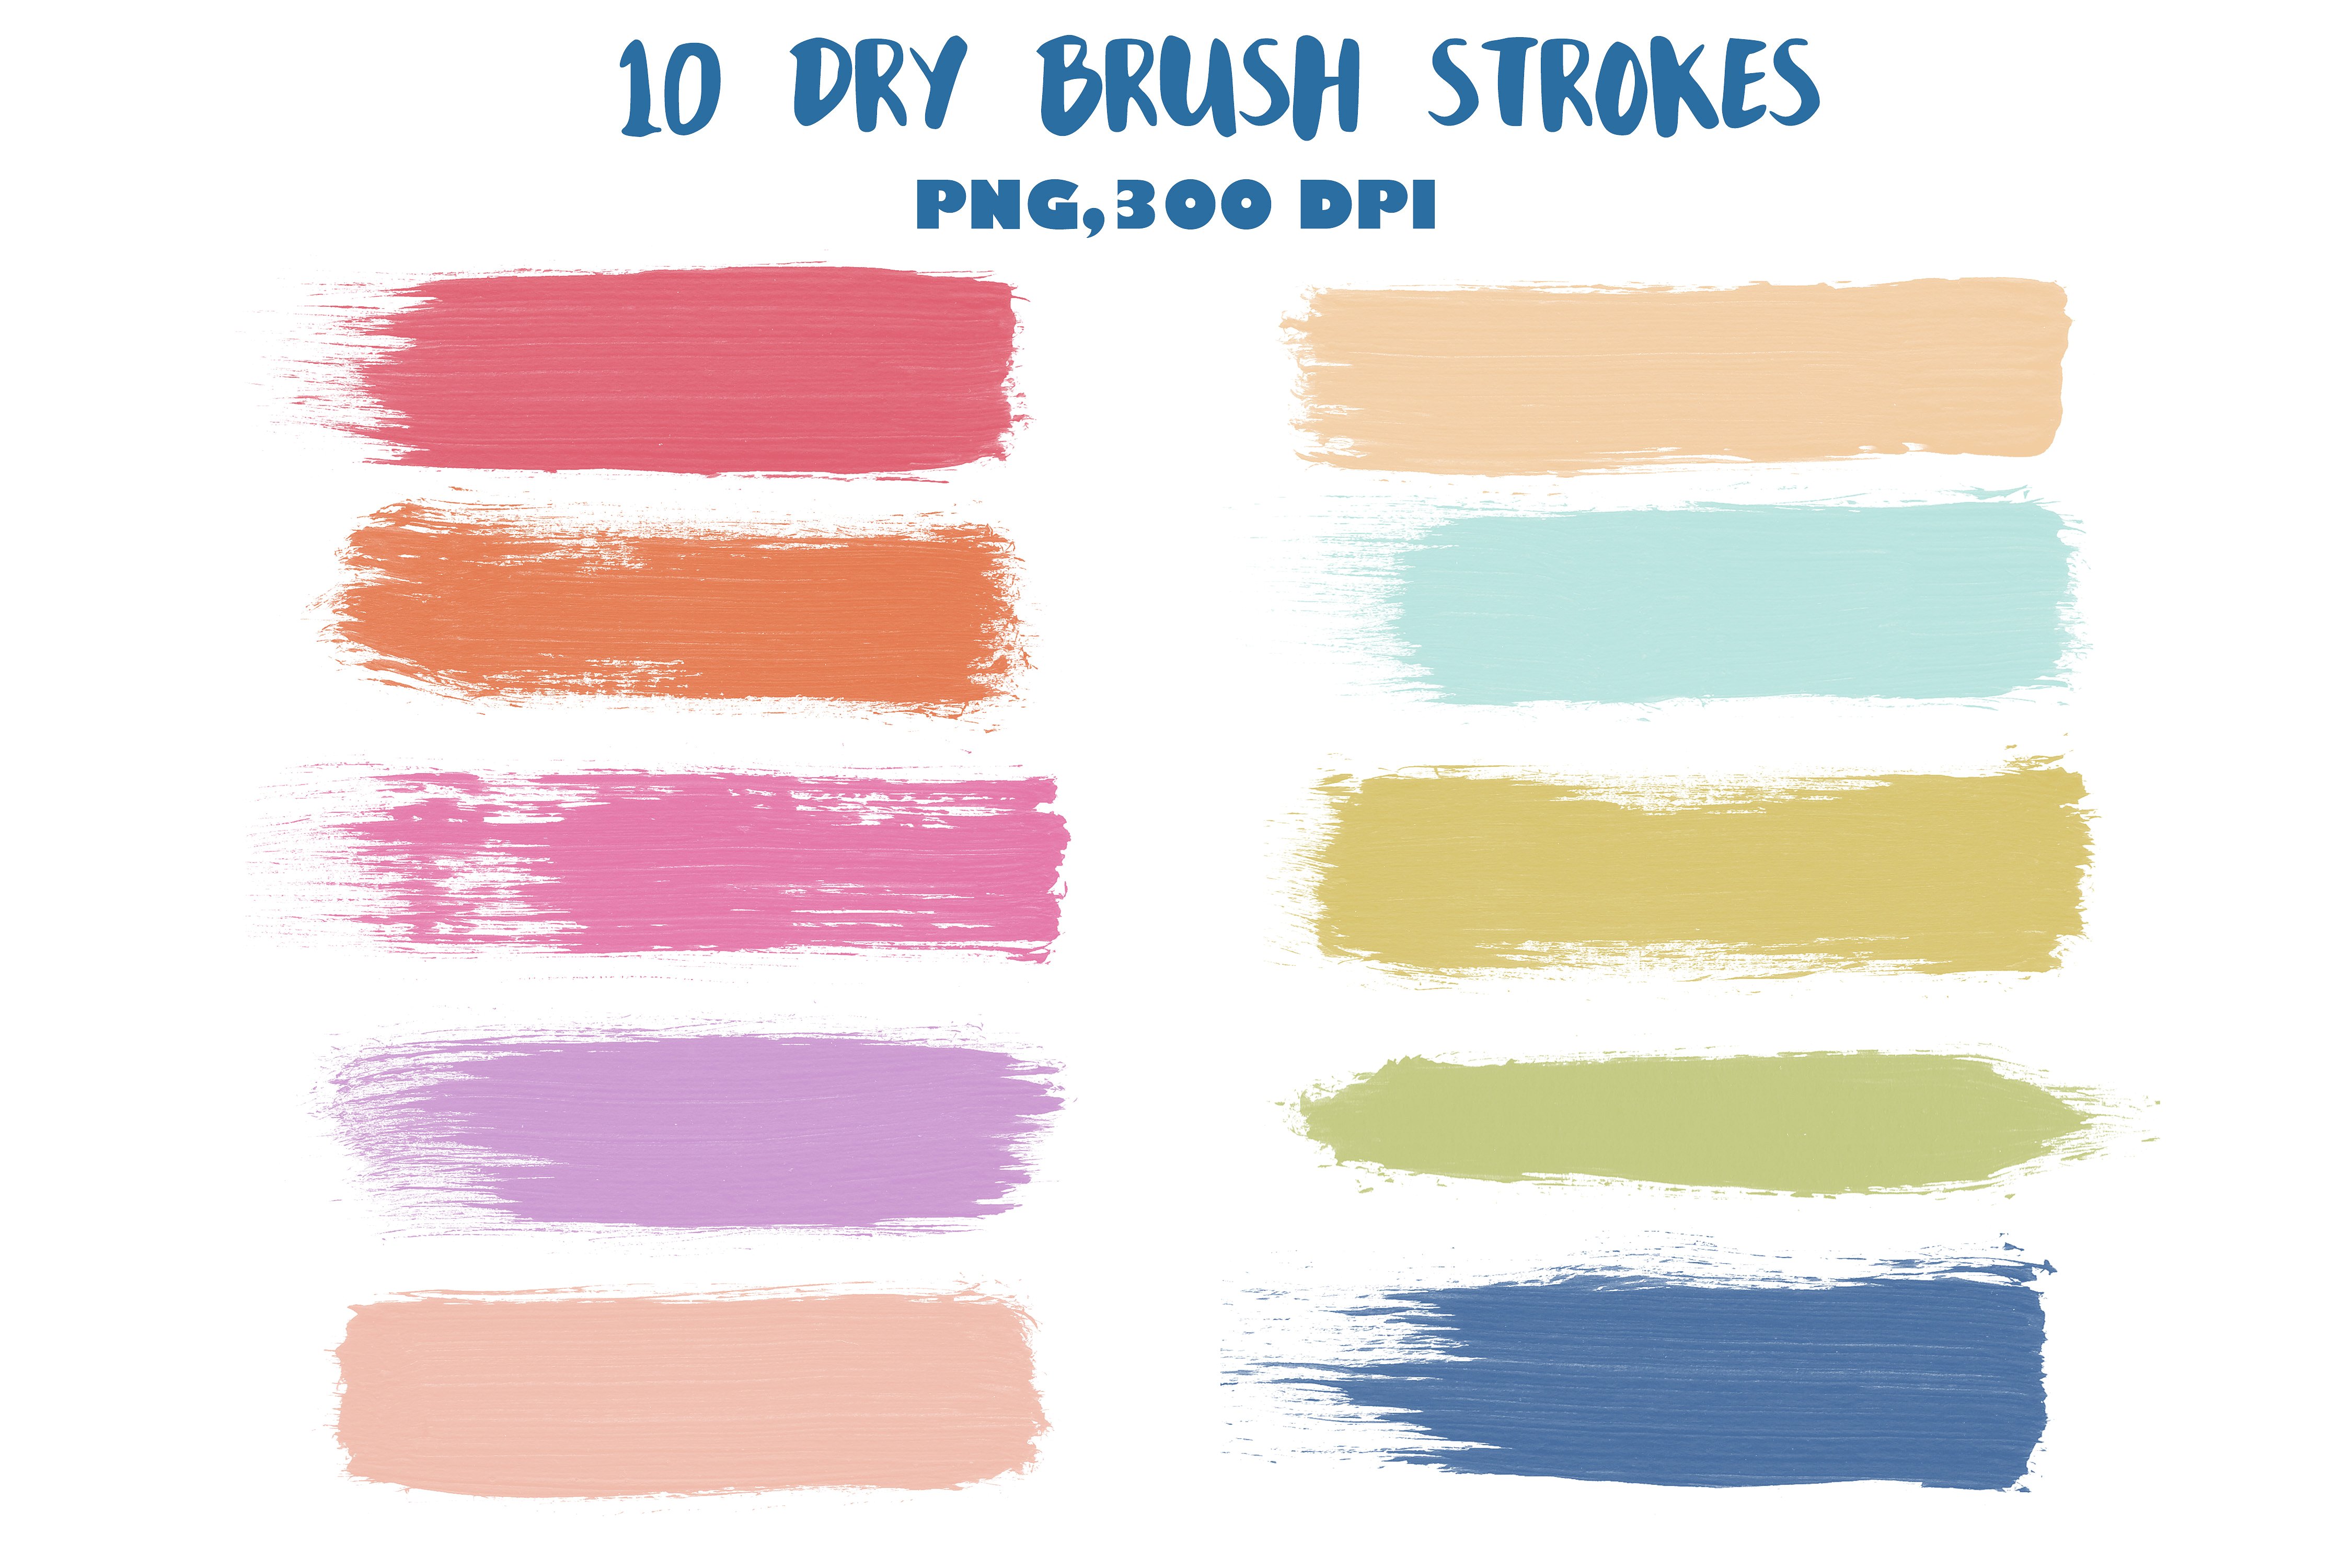 画笔笔刷效果的水彩画素材 Dry brush strokes